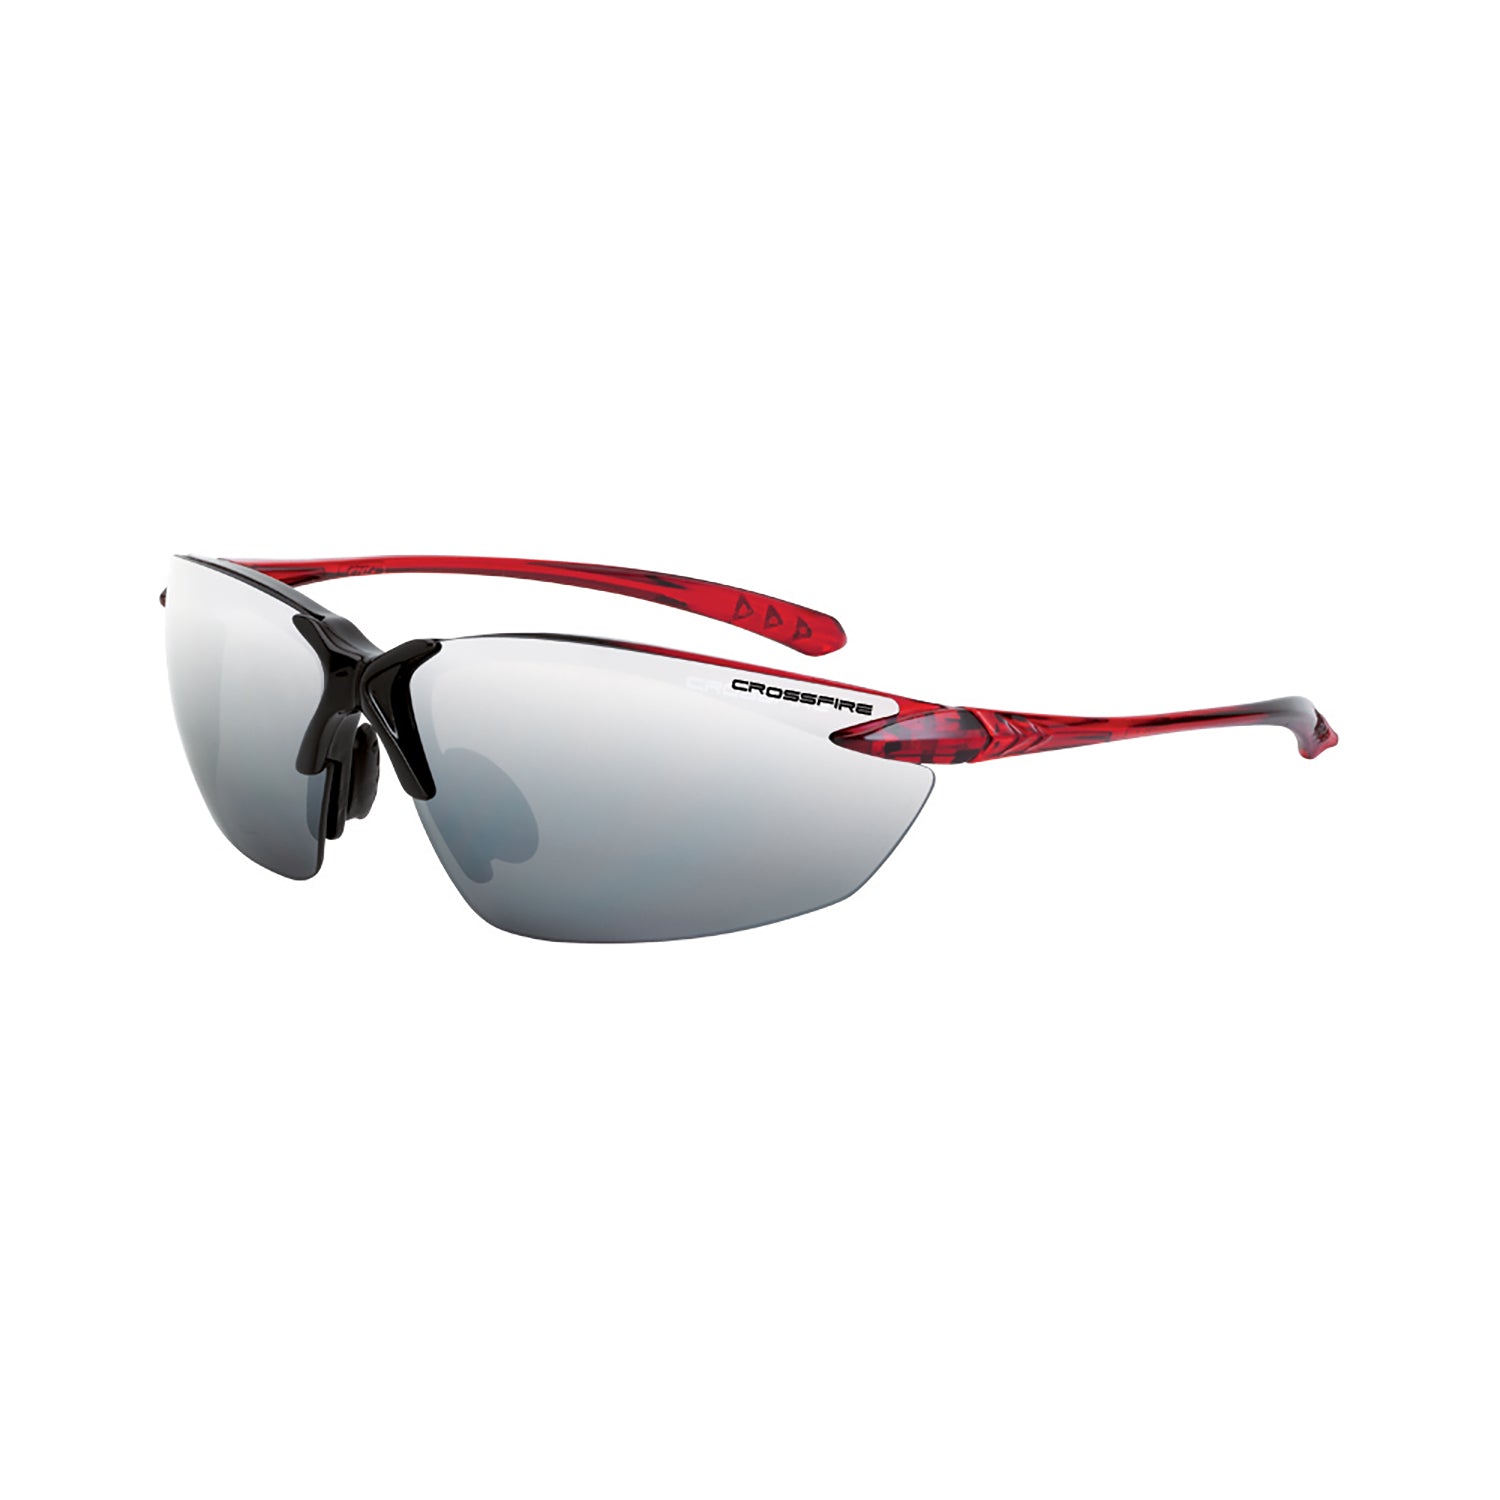 Crossfire Sniper Premium Safety Eyewear-eSafety Supplies, Inc